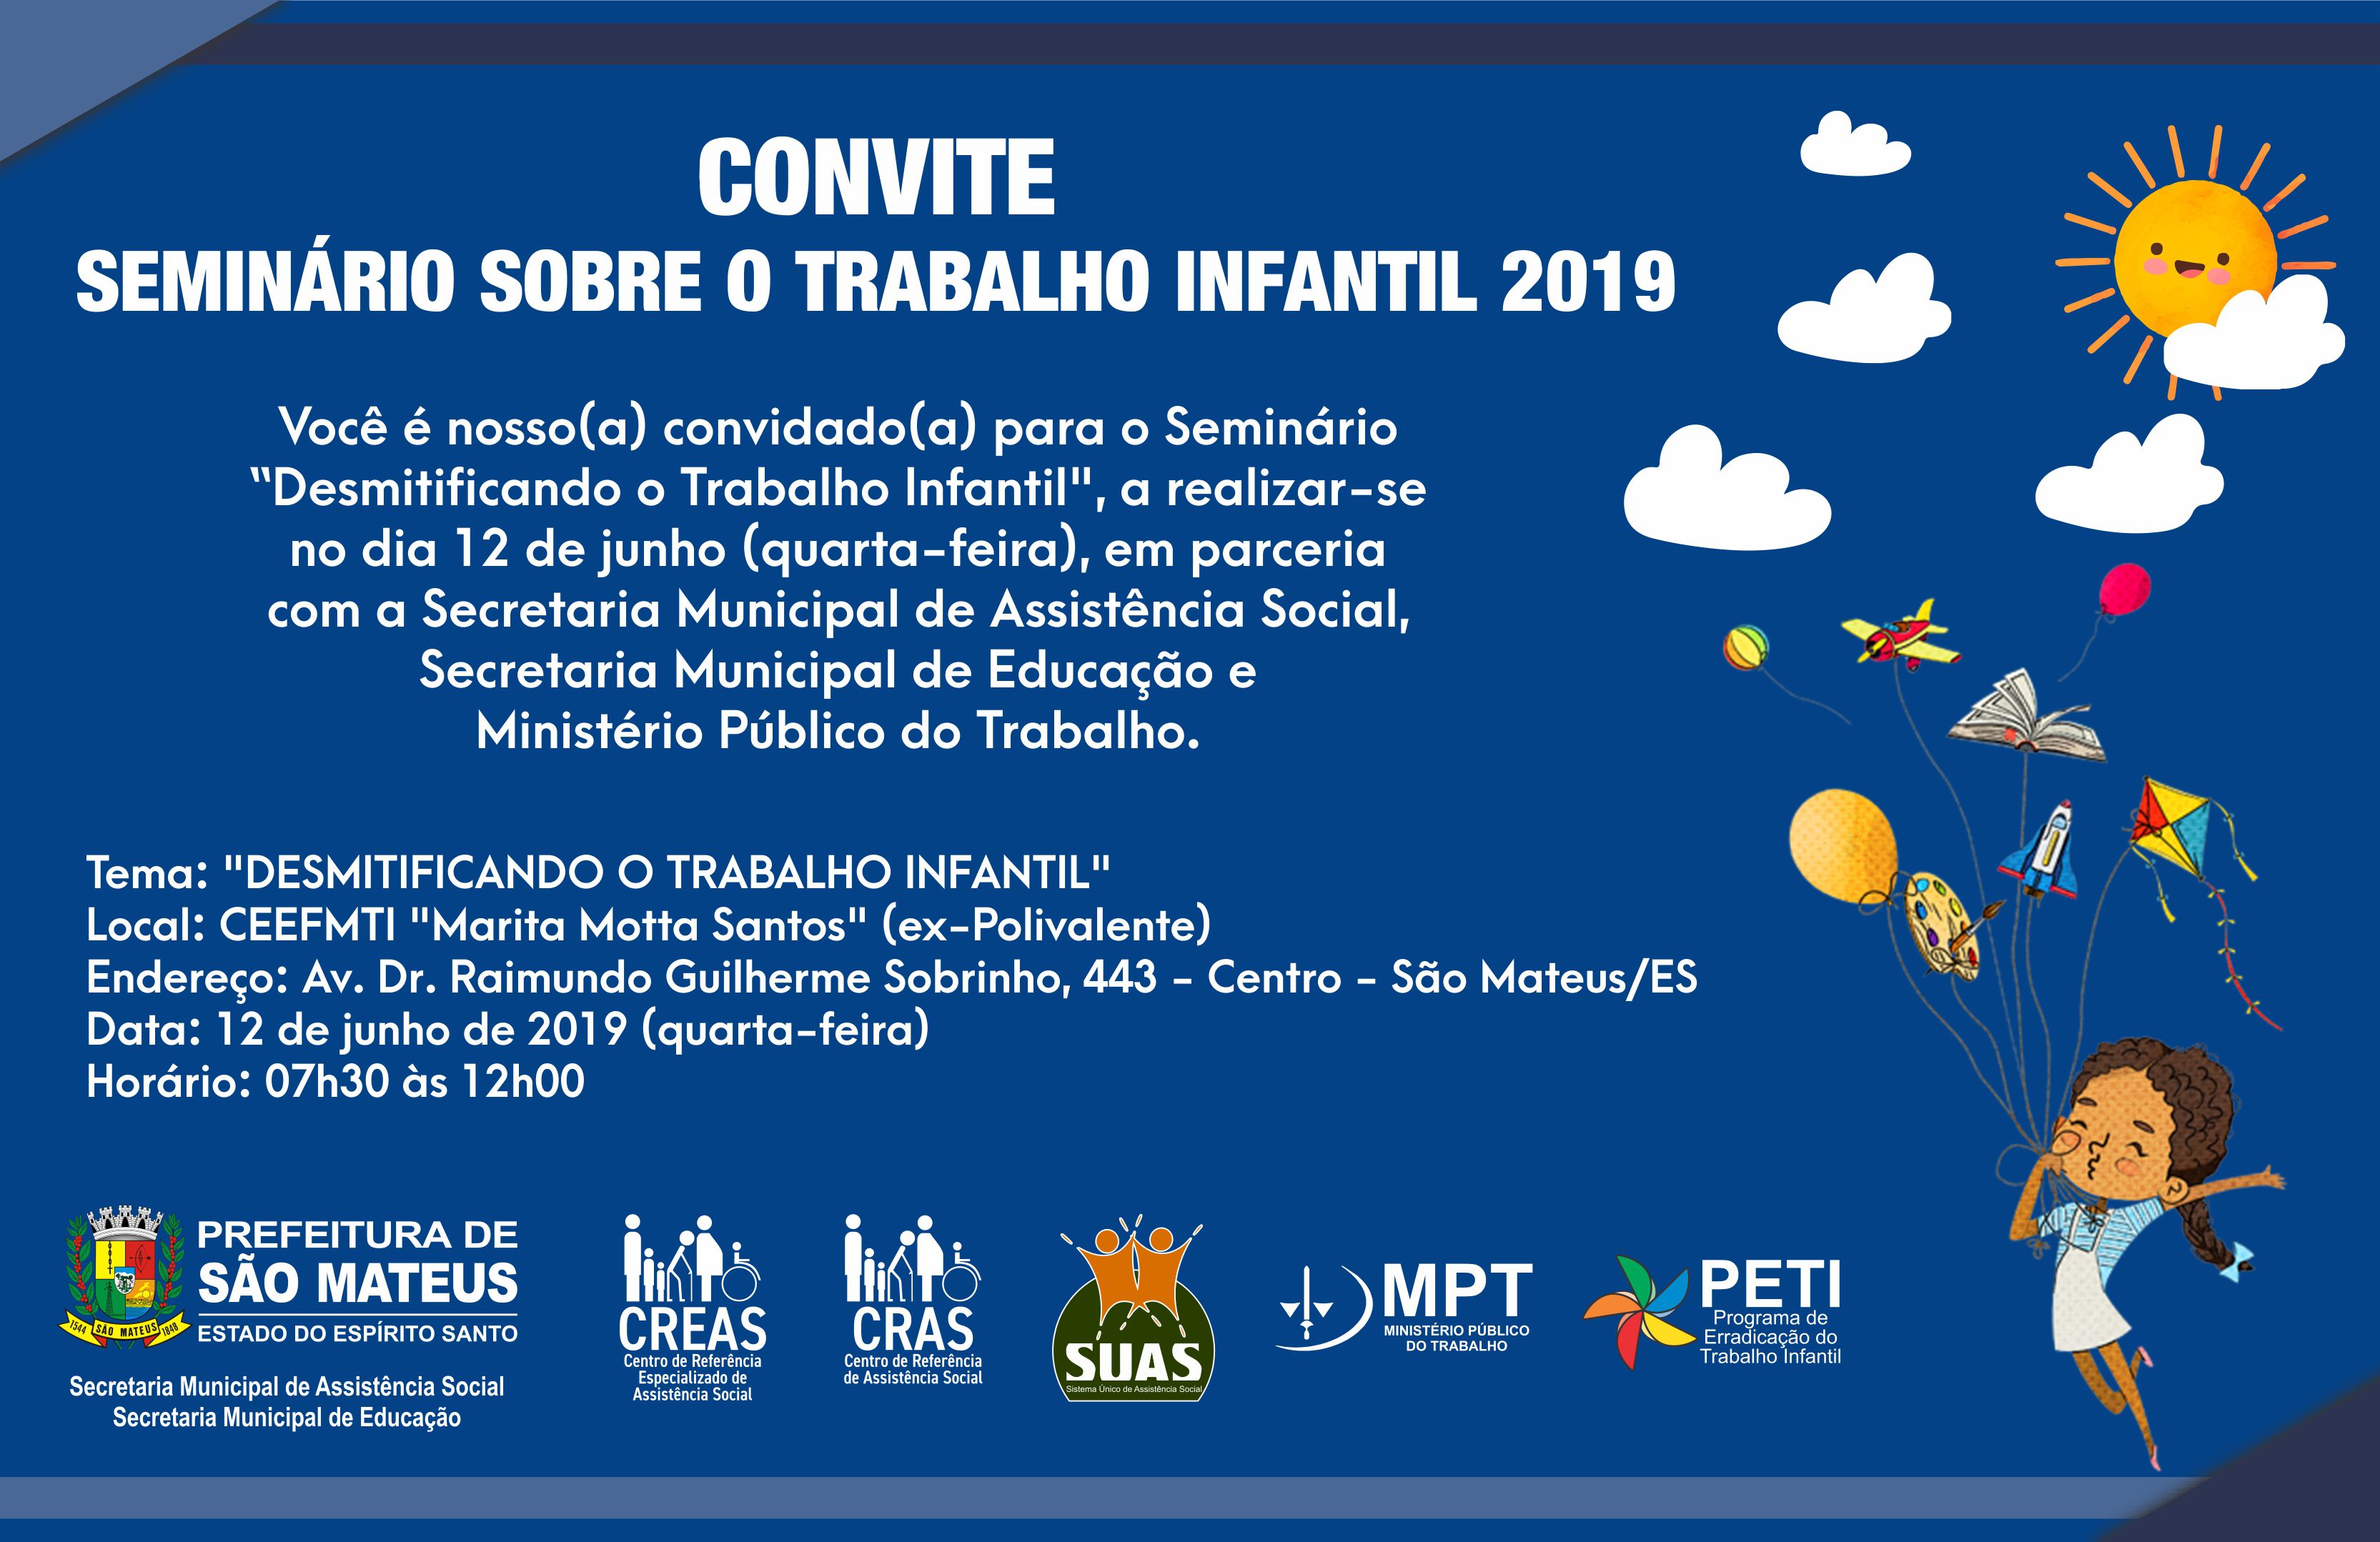 CONVITE - SEMINÁRIO SOBRE O TRABALHO INFANTIL 2019